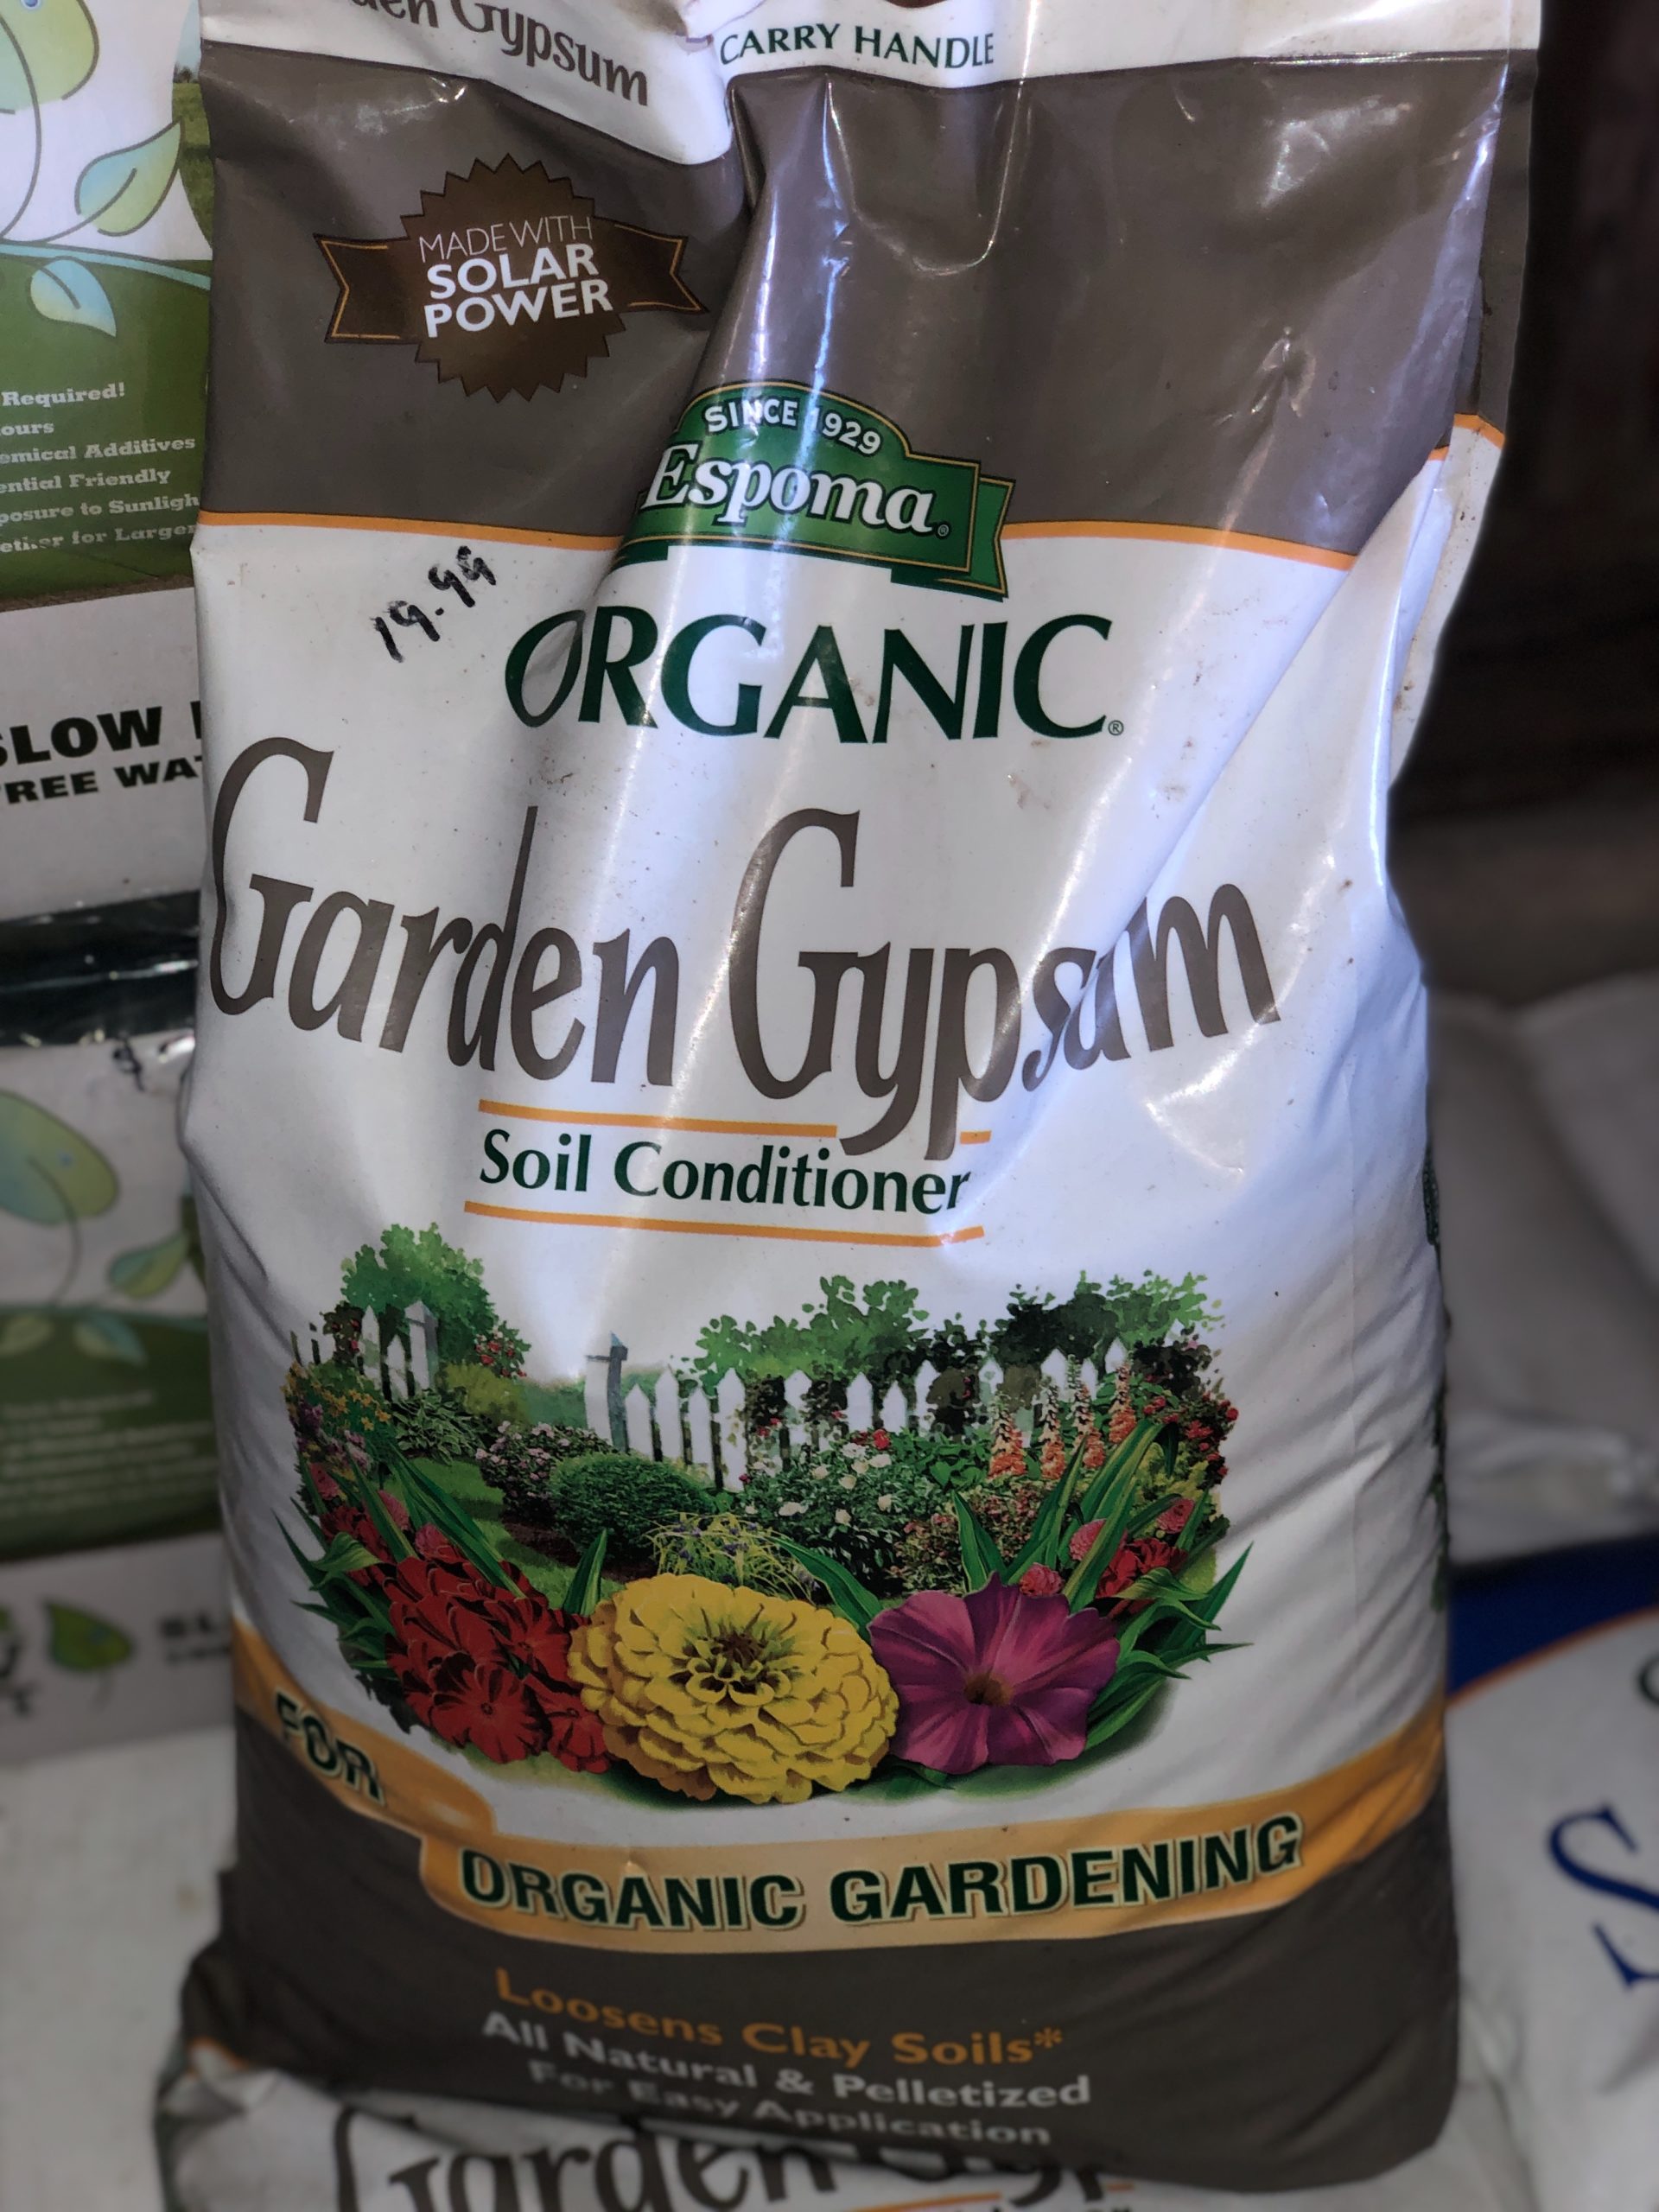 Espoma Organic Garden Gypsum Soil